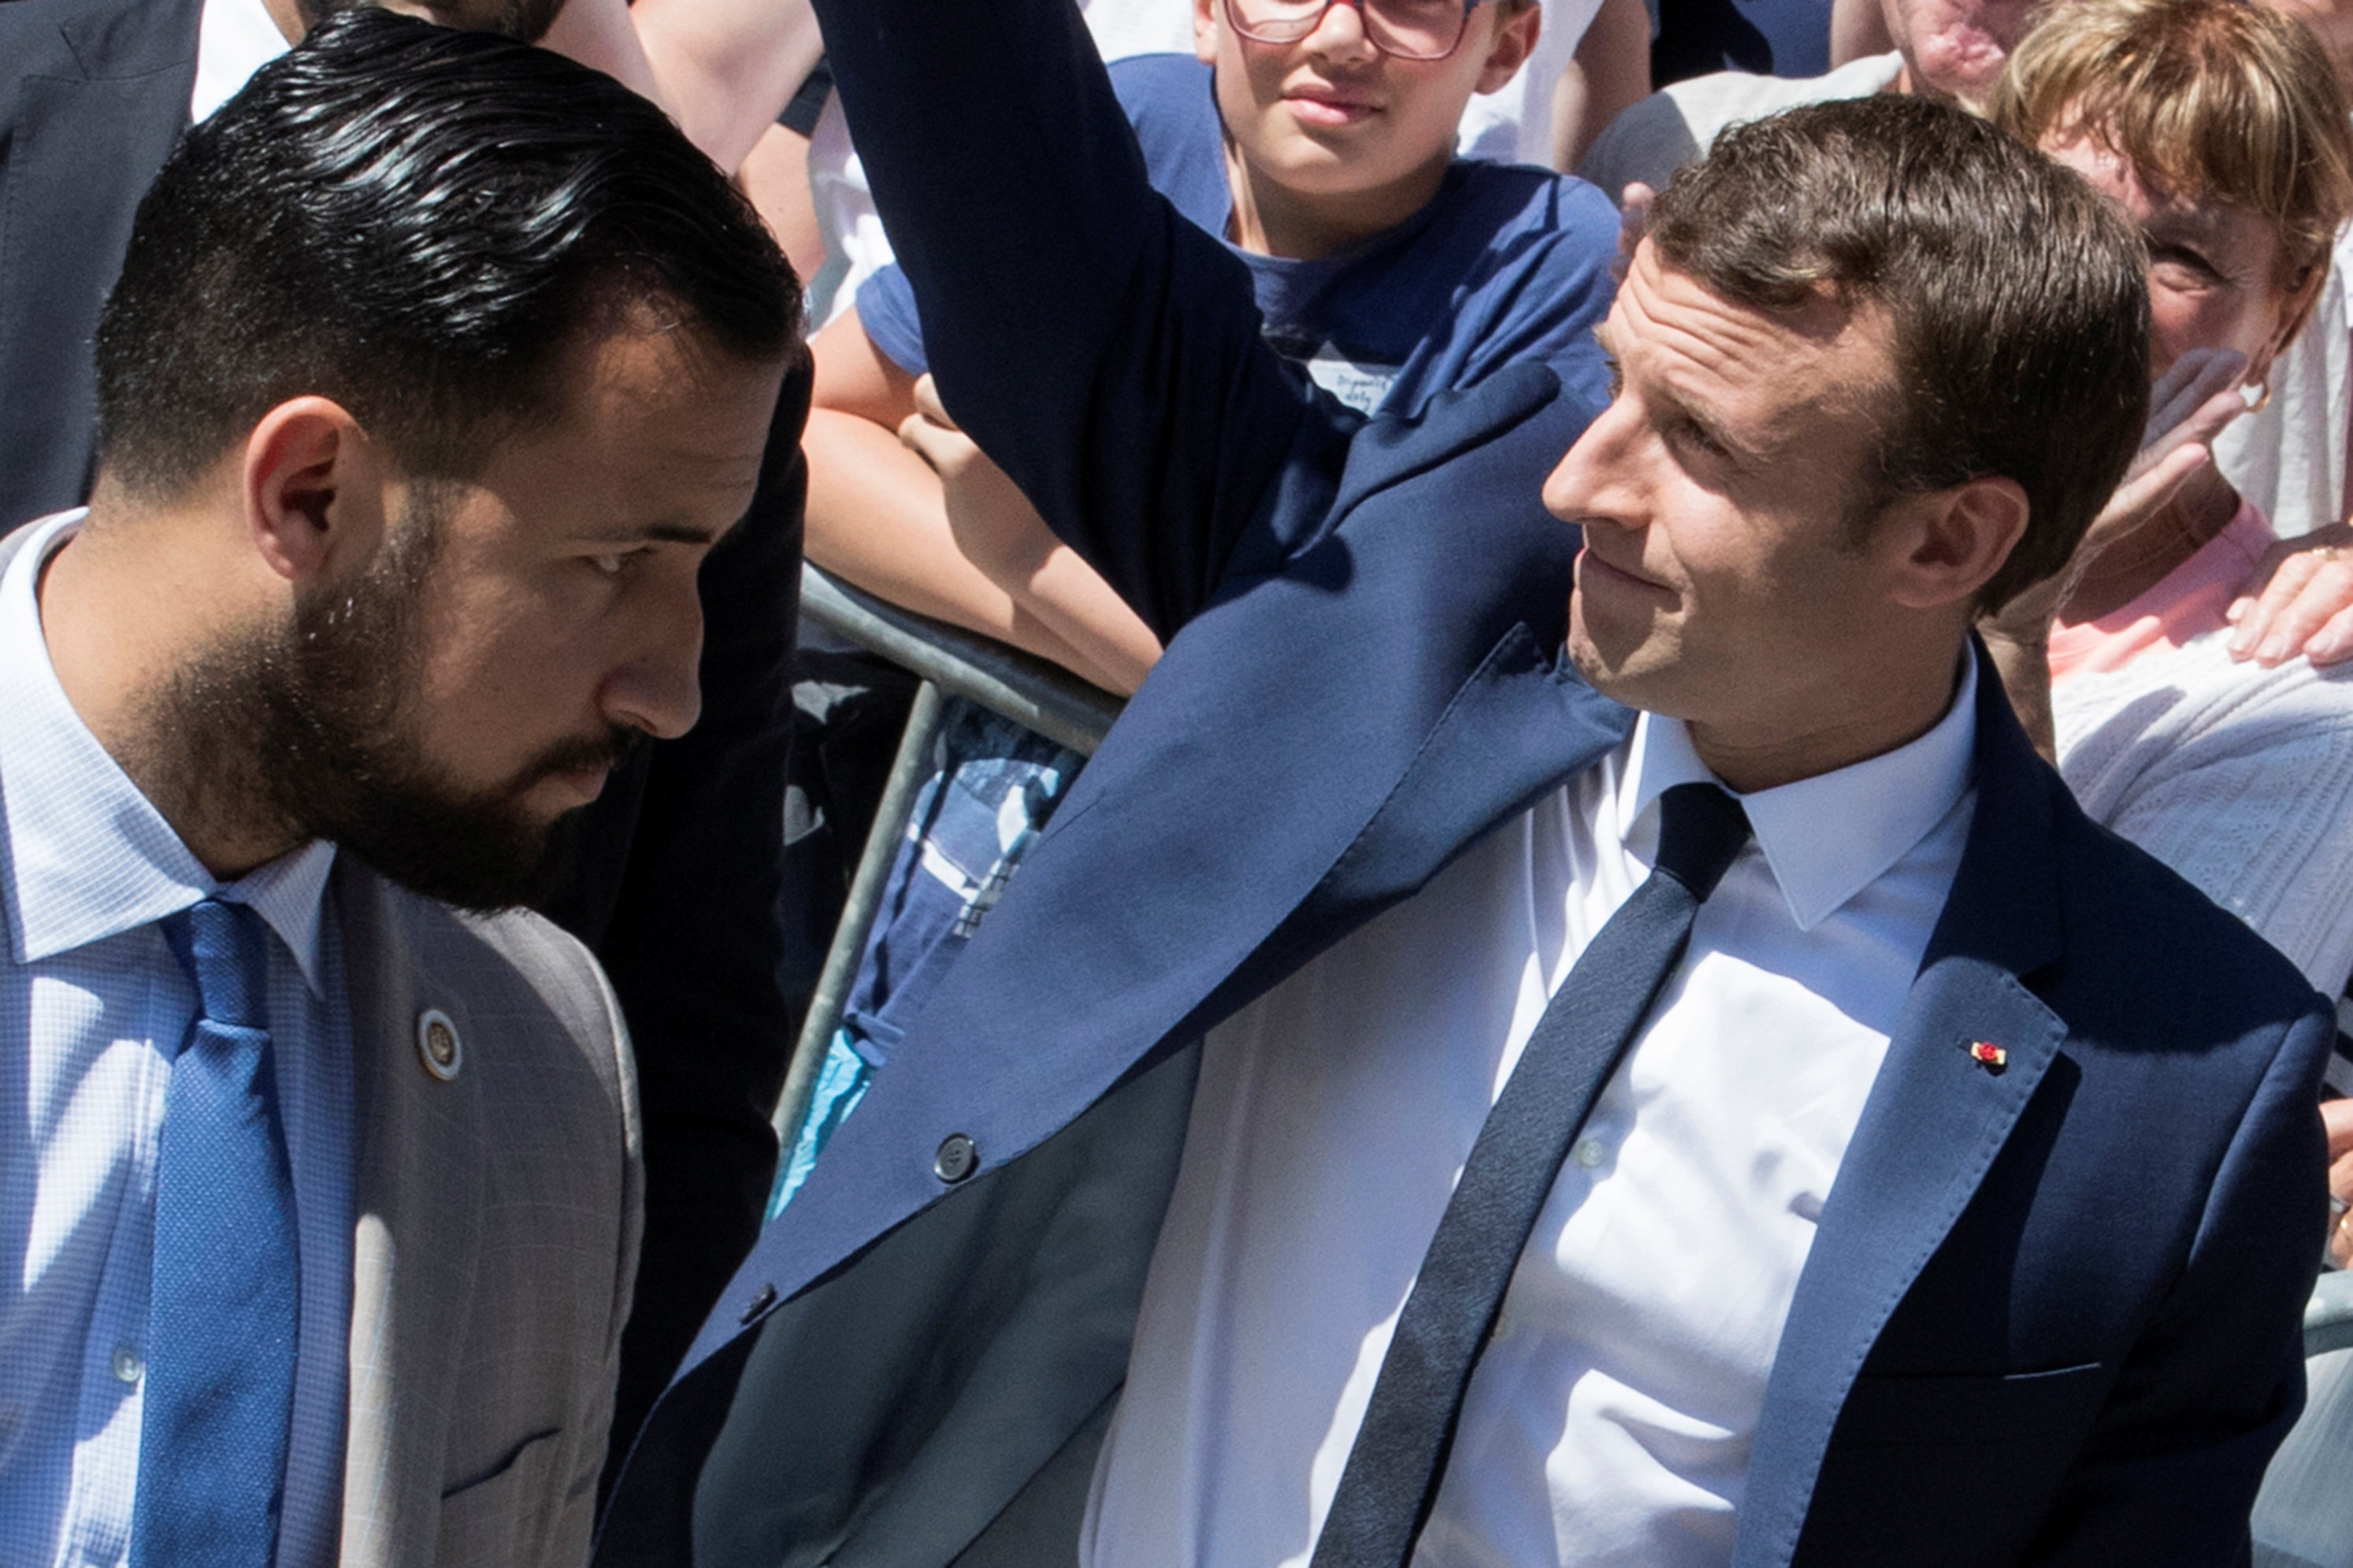 Macron contraataca pero fracasa en su intento de acallar las críticas por el “Benallagate”